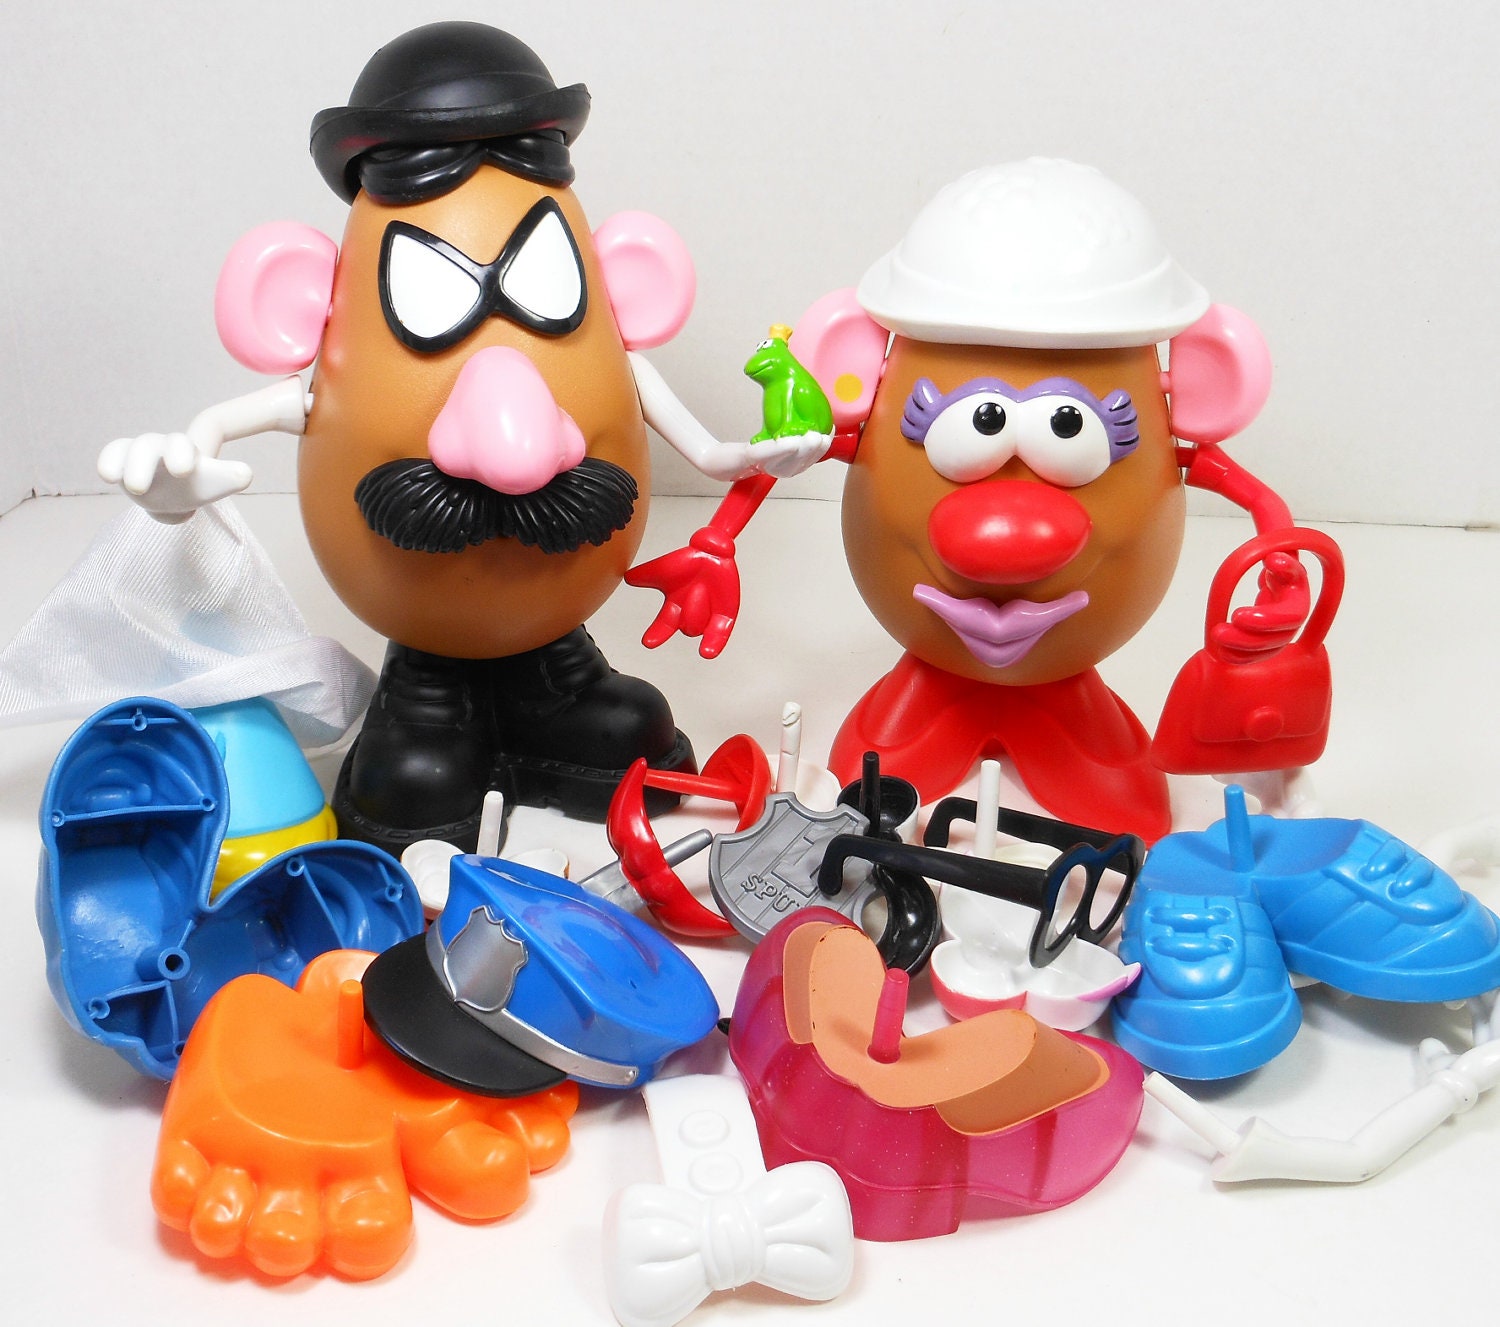 Vintage Mr & Mrs Potato Head DeStash Toy Assortment Parts